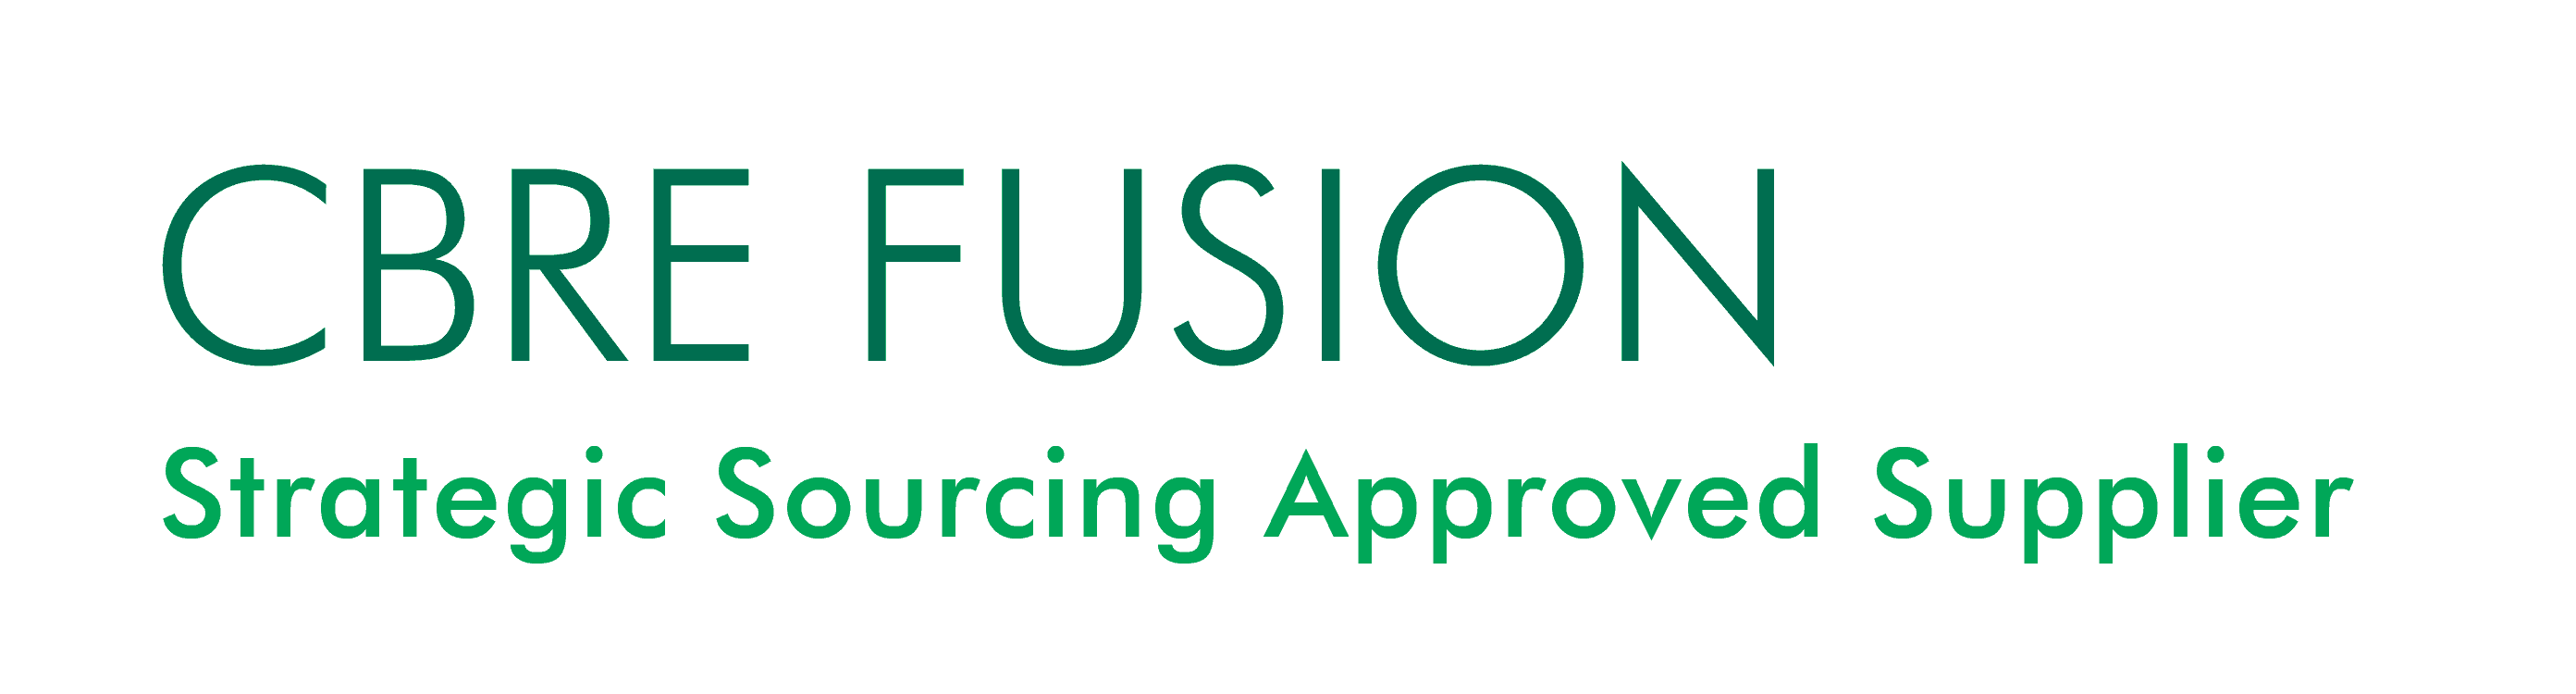 CBRE Fusion supplier logo